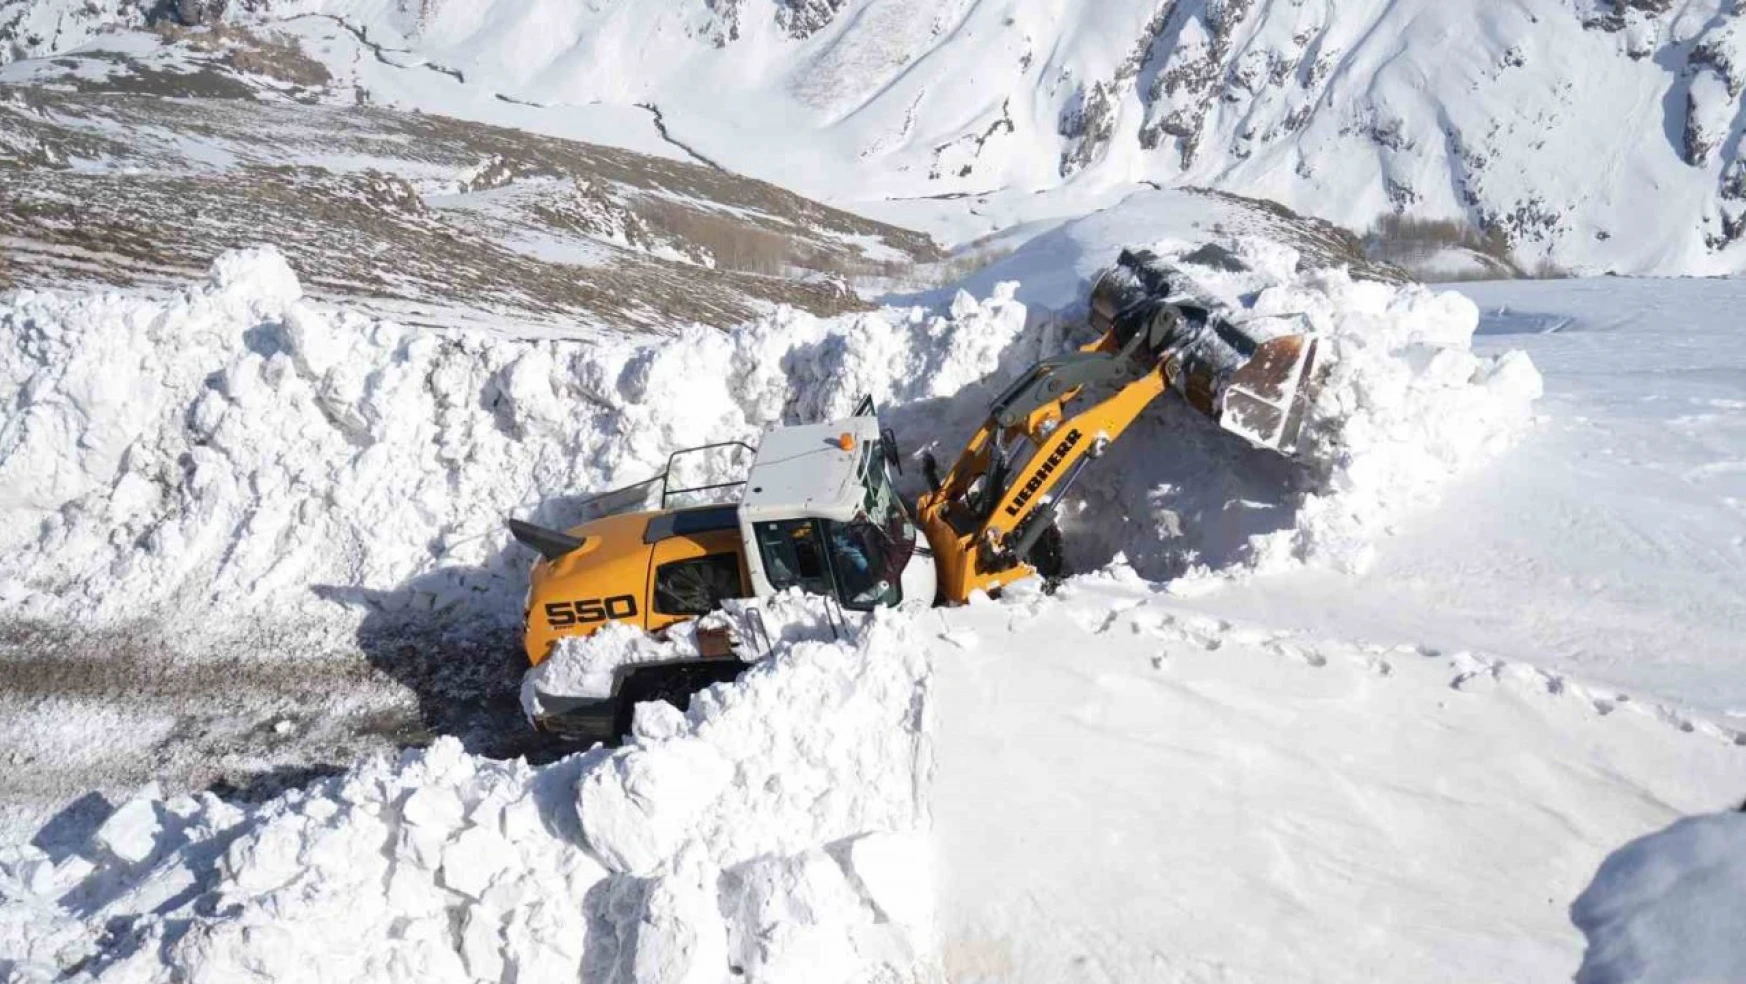 Muş'ta kar kalınlığının 7 metreyi bulduğu yolda çalışma